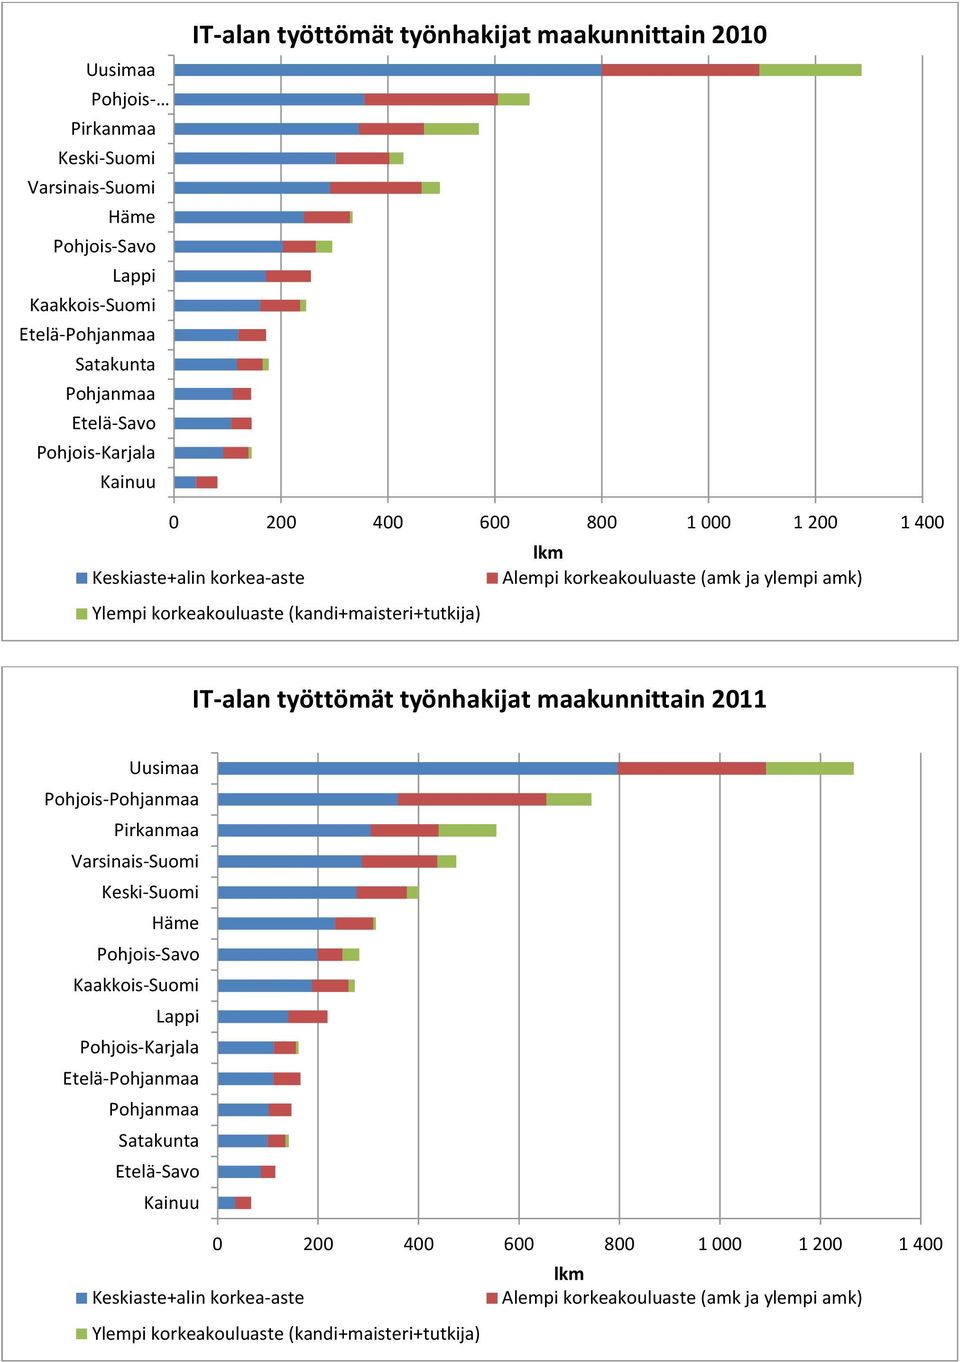 amk) IT-alan työttömät työnhakijat maakunnittain Uusimaa Pohjois-Pohjanmaa Pirkanmaa Varsinais-Suomi Keski-Suomi Häme Pohjois-Savo